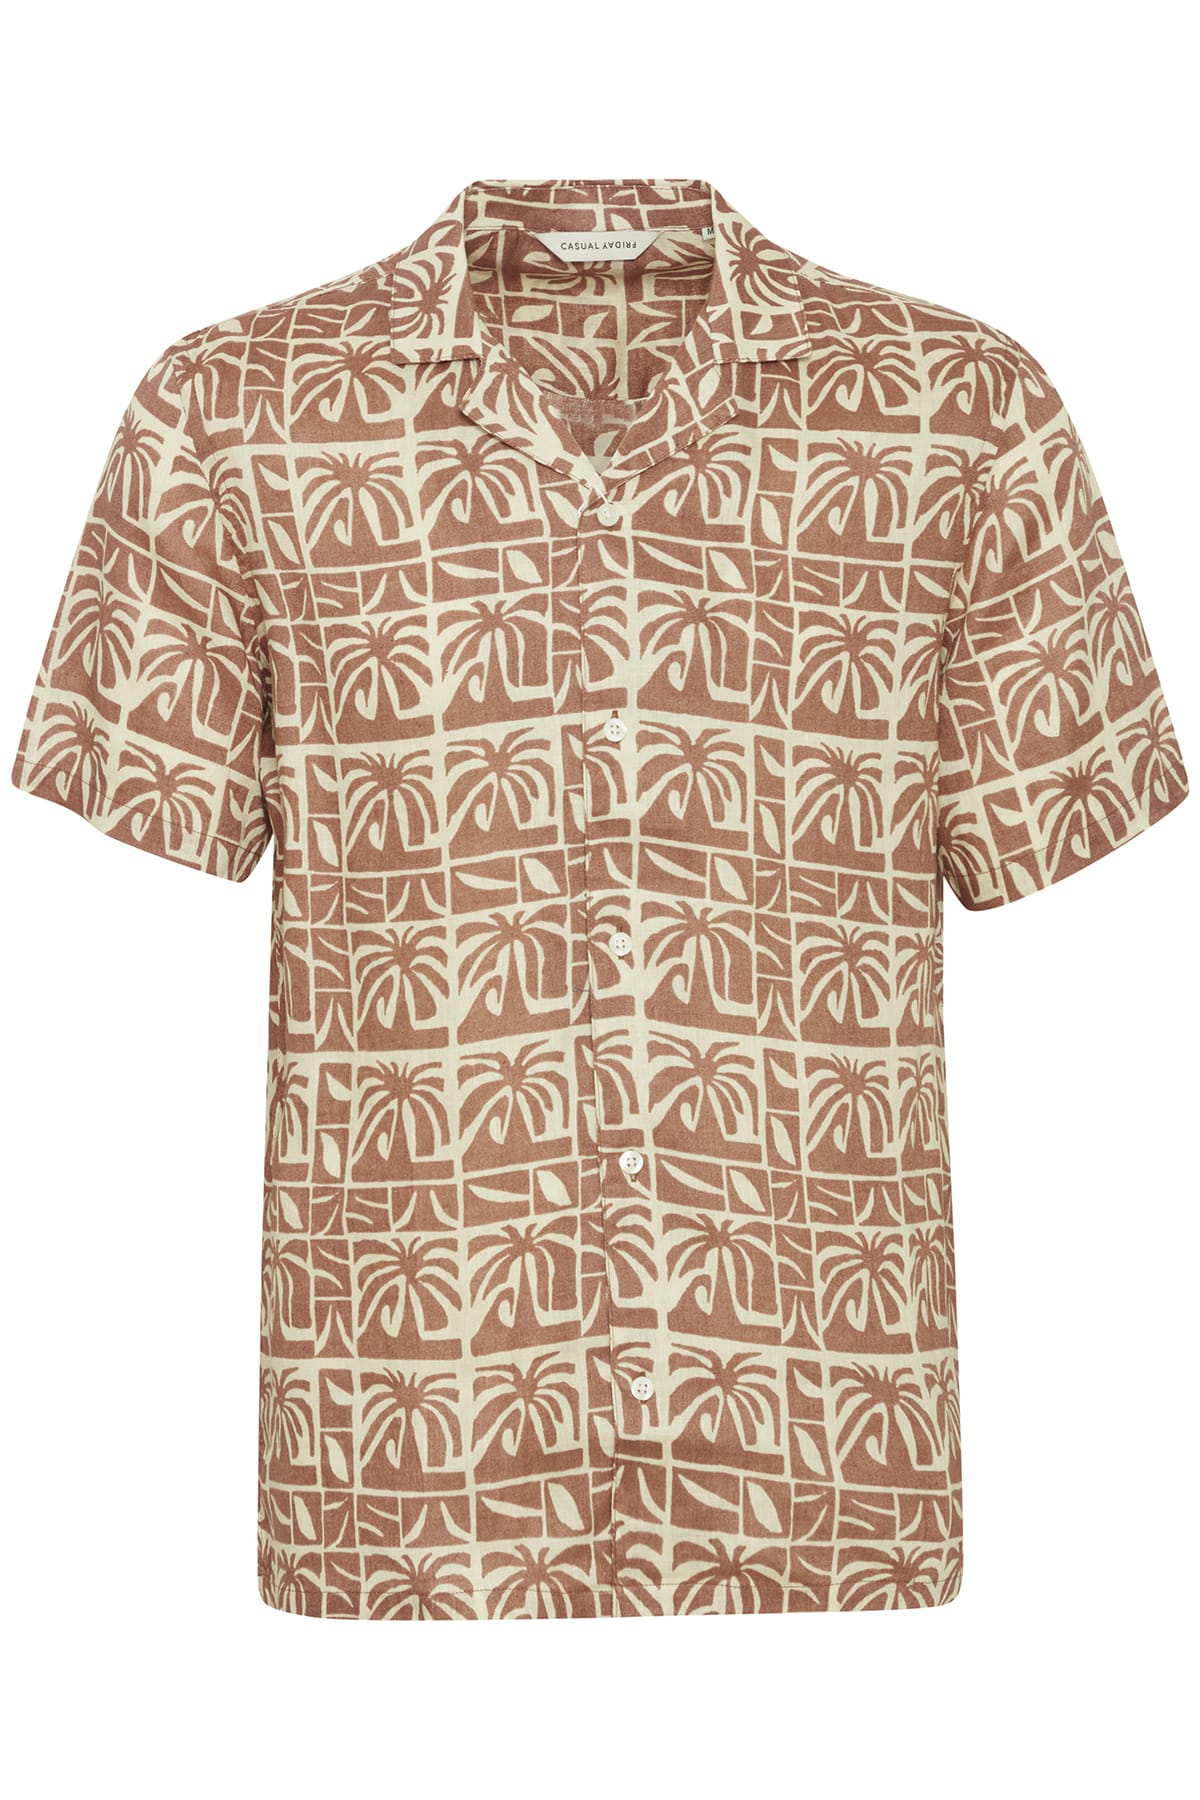 Hemd CFAnton SS AOP palm shirt - 100% linen Beaver Fur Hemd Casual Friday 